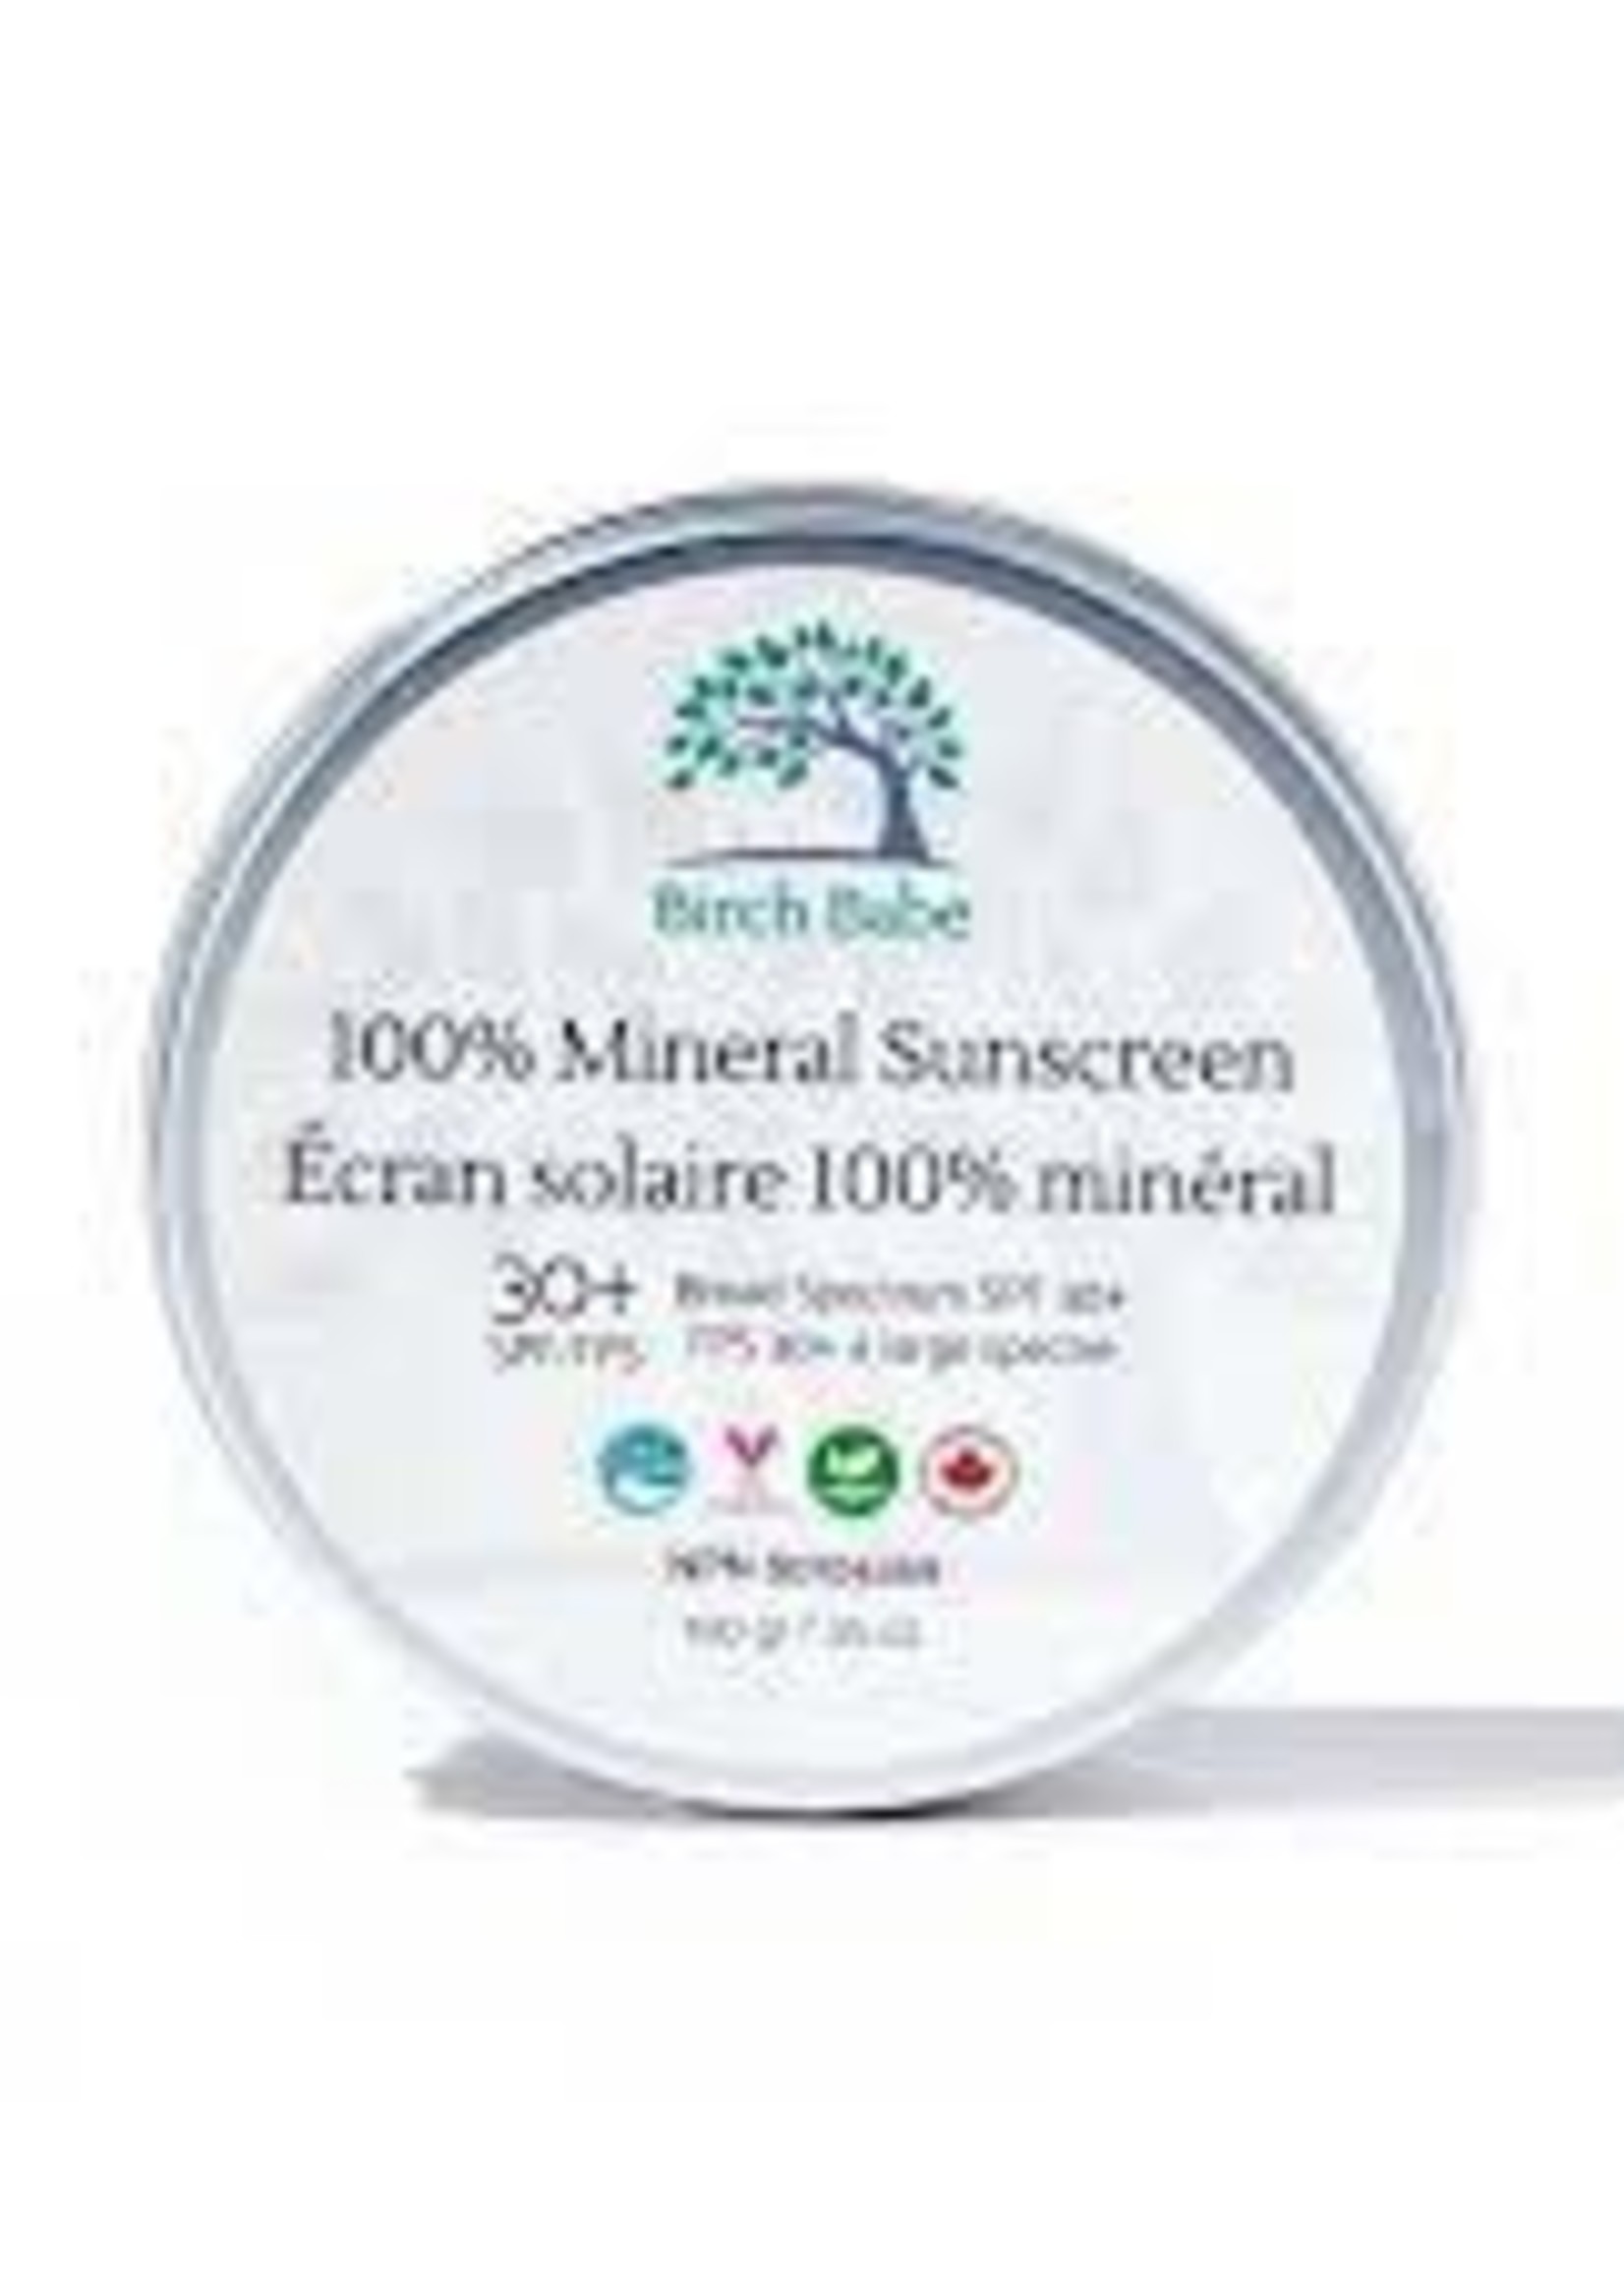 Birch Babe 100% Mineral Sunscreen